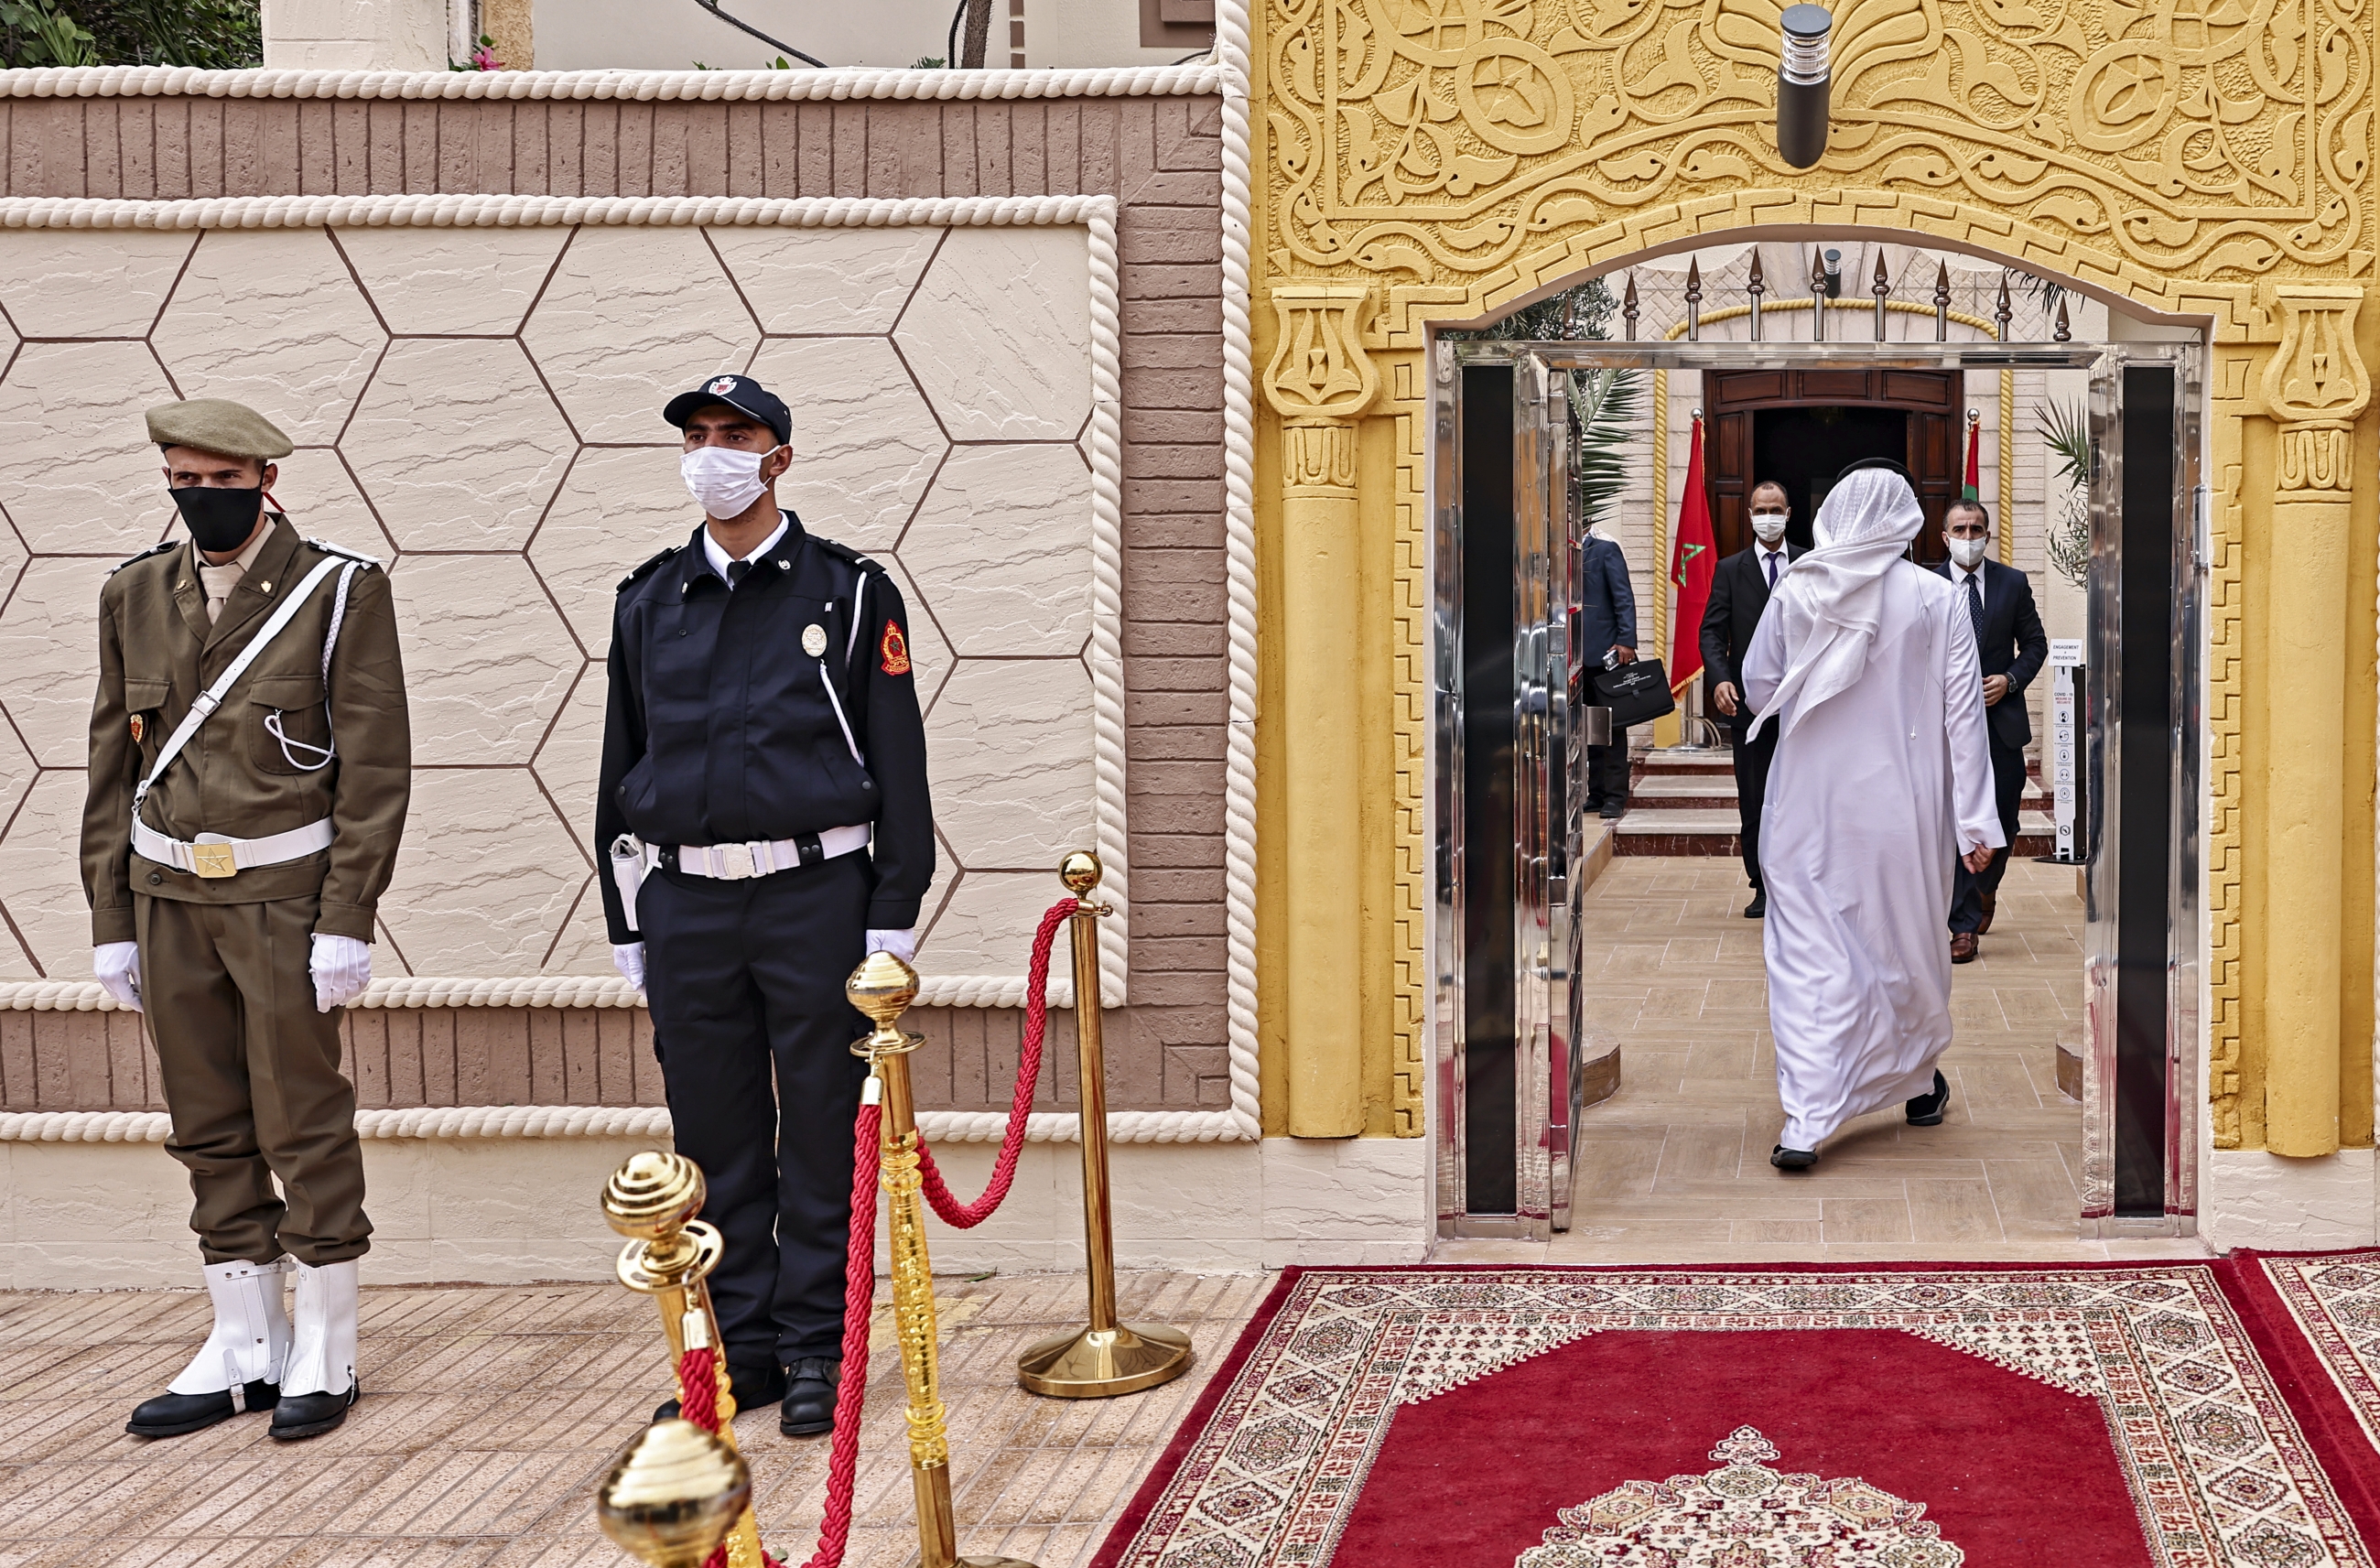 Des agents de sécurité devant le nouveau consulat des Émirats arabes unis à Laâyoune, la principale ville de la région marocaine contestée du Sahara occidental, le 4 novembre 2020 (AFP)